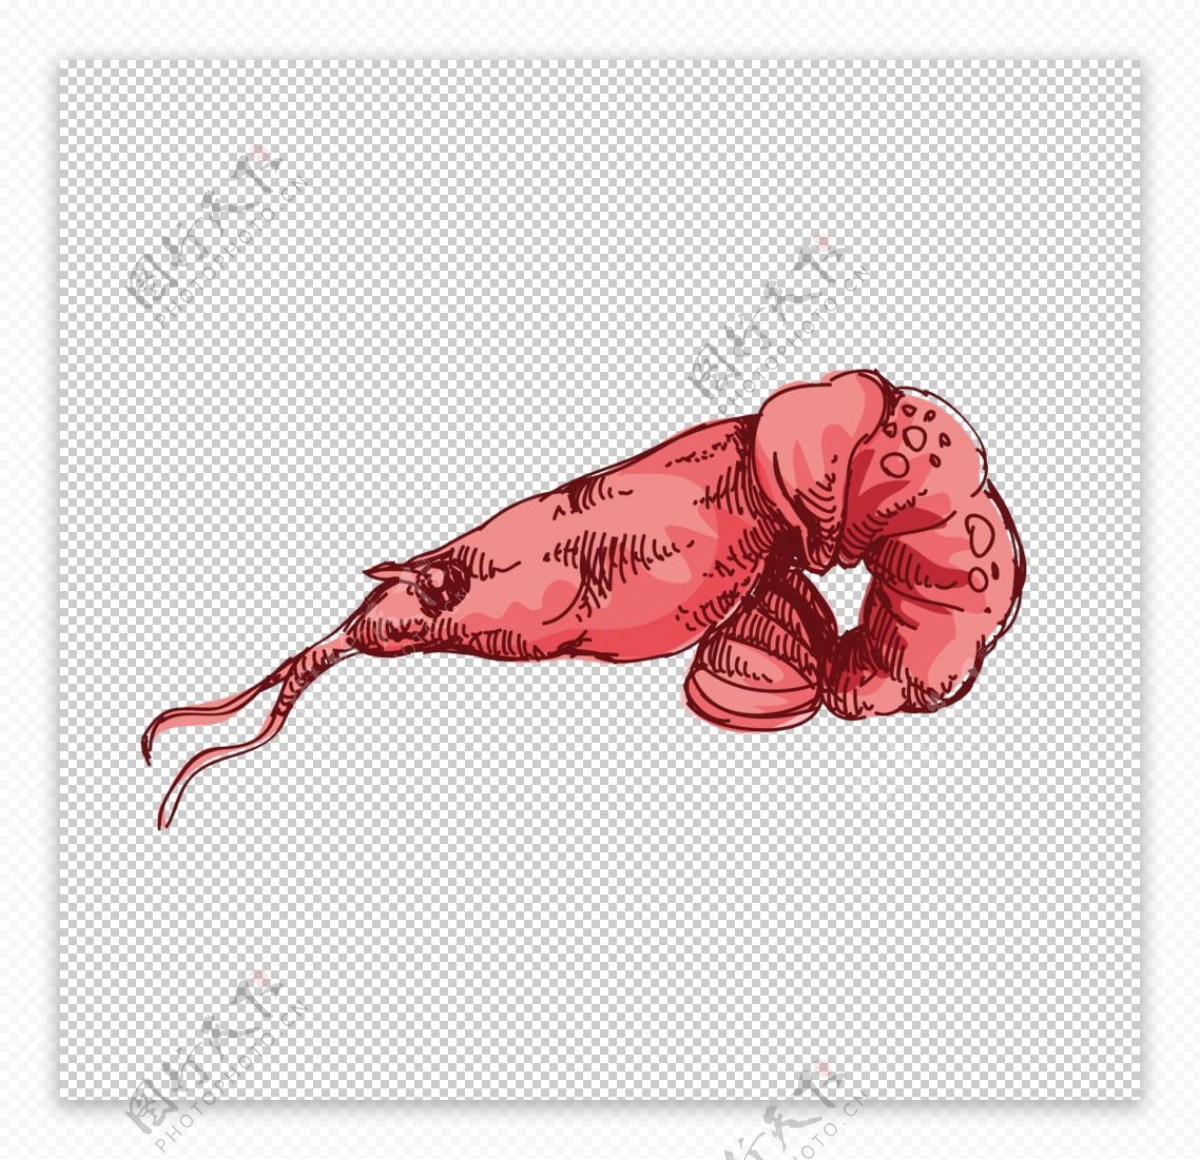 大红色海虾图案